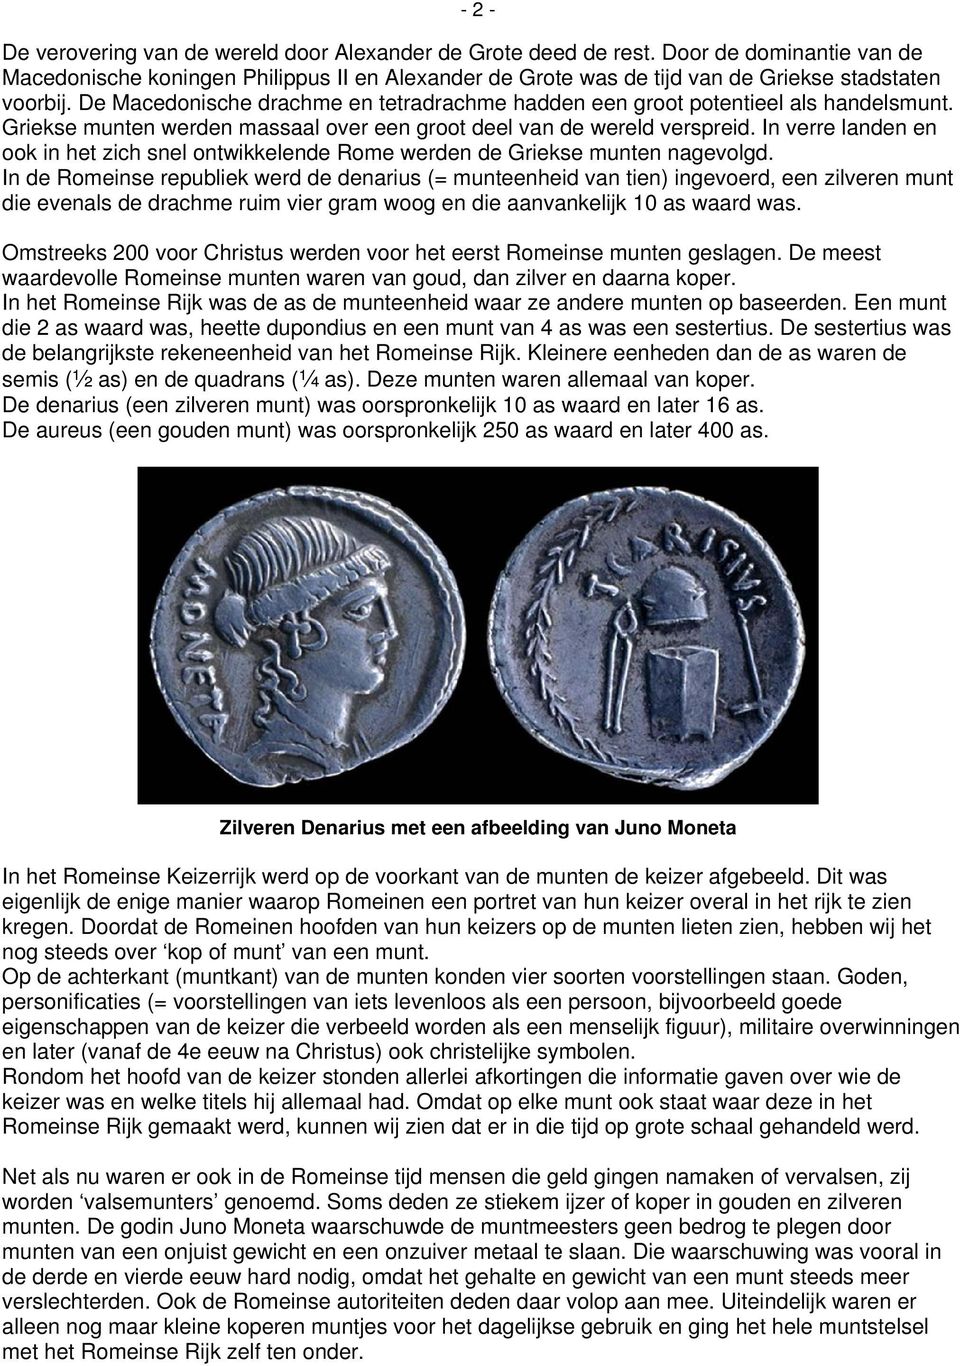 De Macedonische drachme en tetradrachme hadden een groot potentieel als handelsmunt. Griekse munten werden massaal over een groot deel van de wereld verspreid.